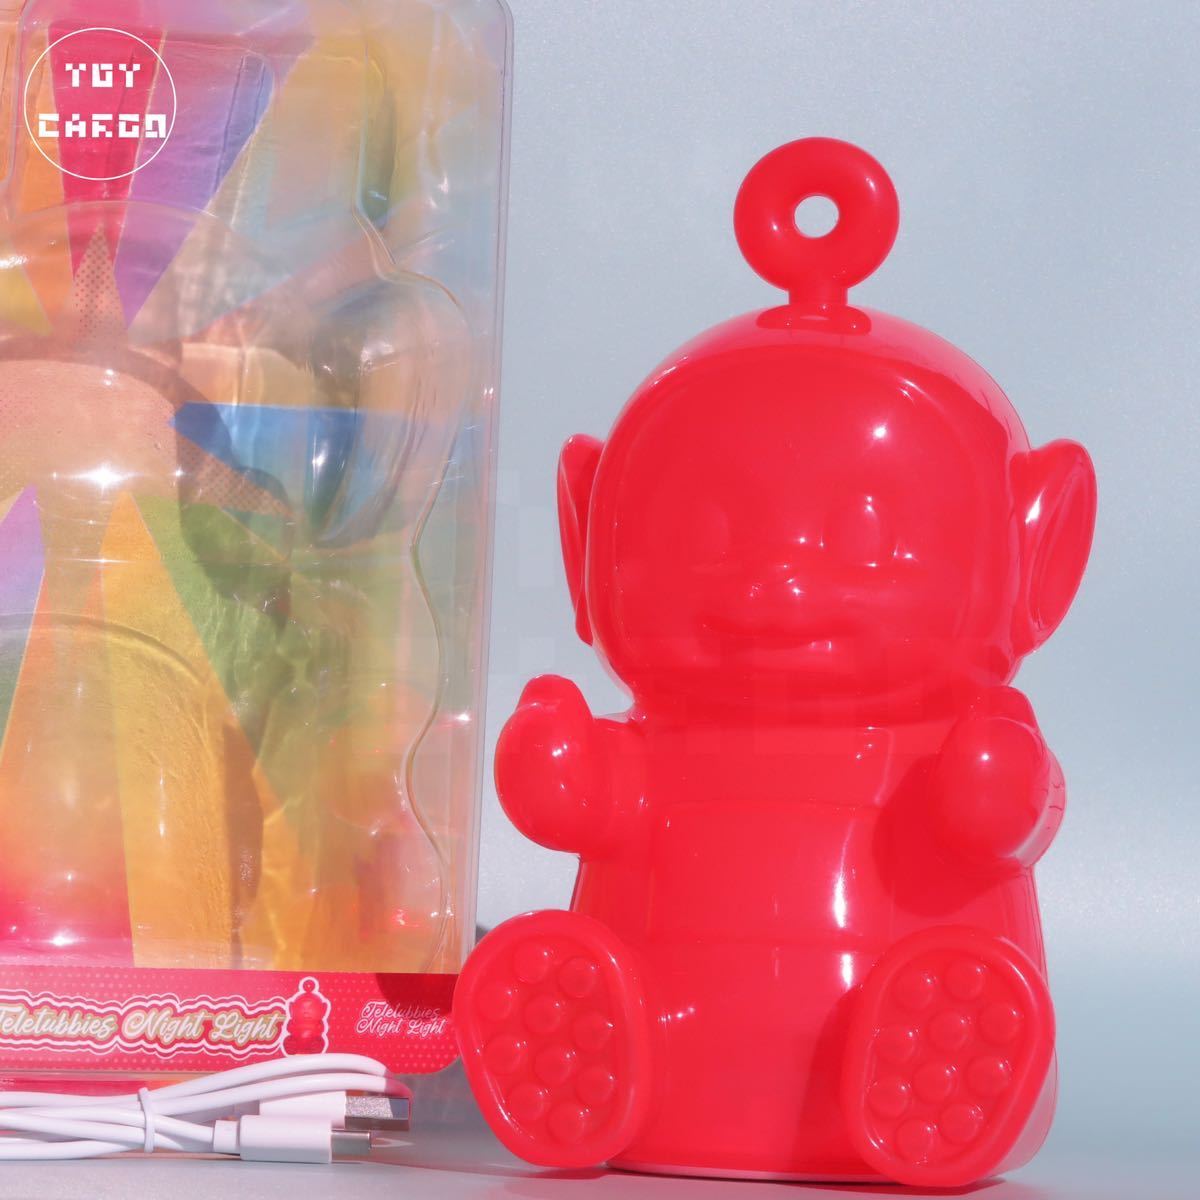 [ Телепузики ] Poe gmi свет осветительное оборудование лампа смешанные товары интерьер фигурка игрушка искусство игрушка 